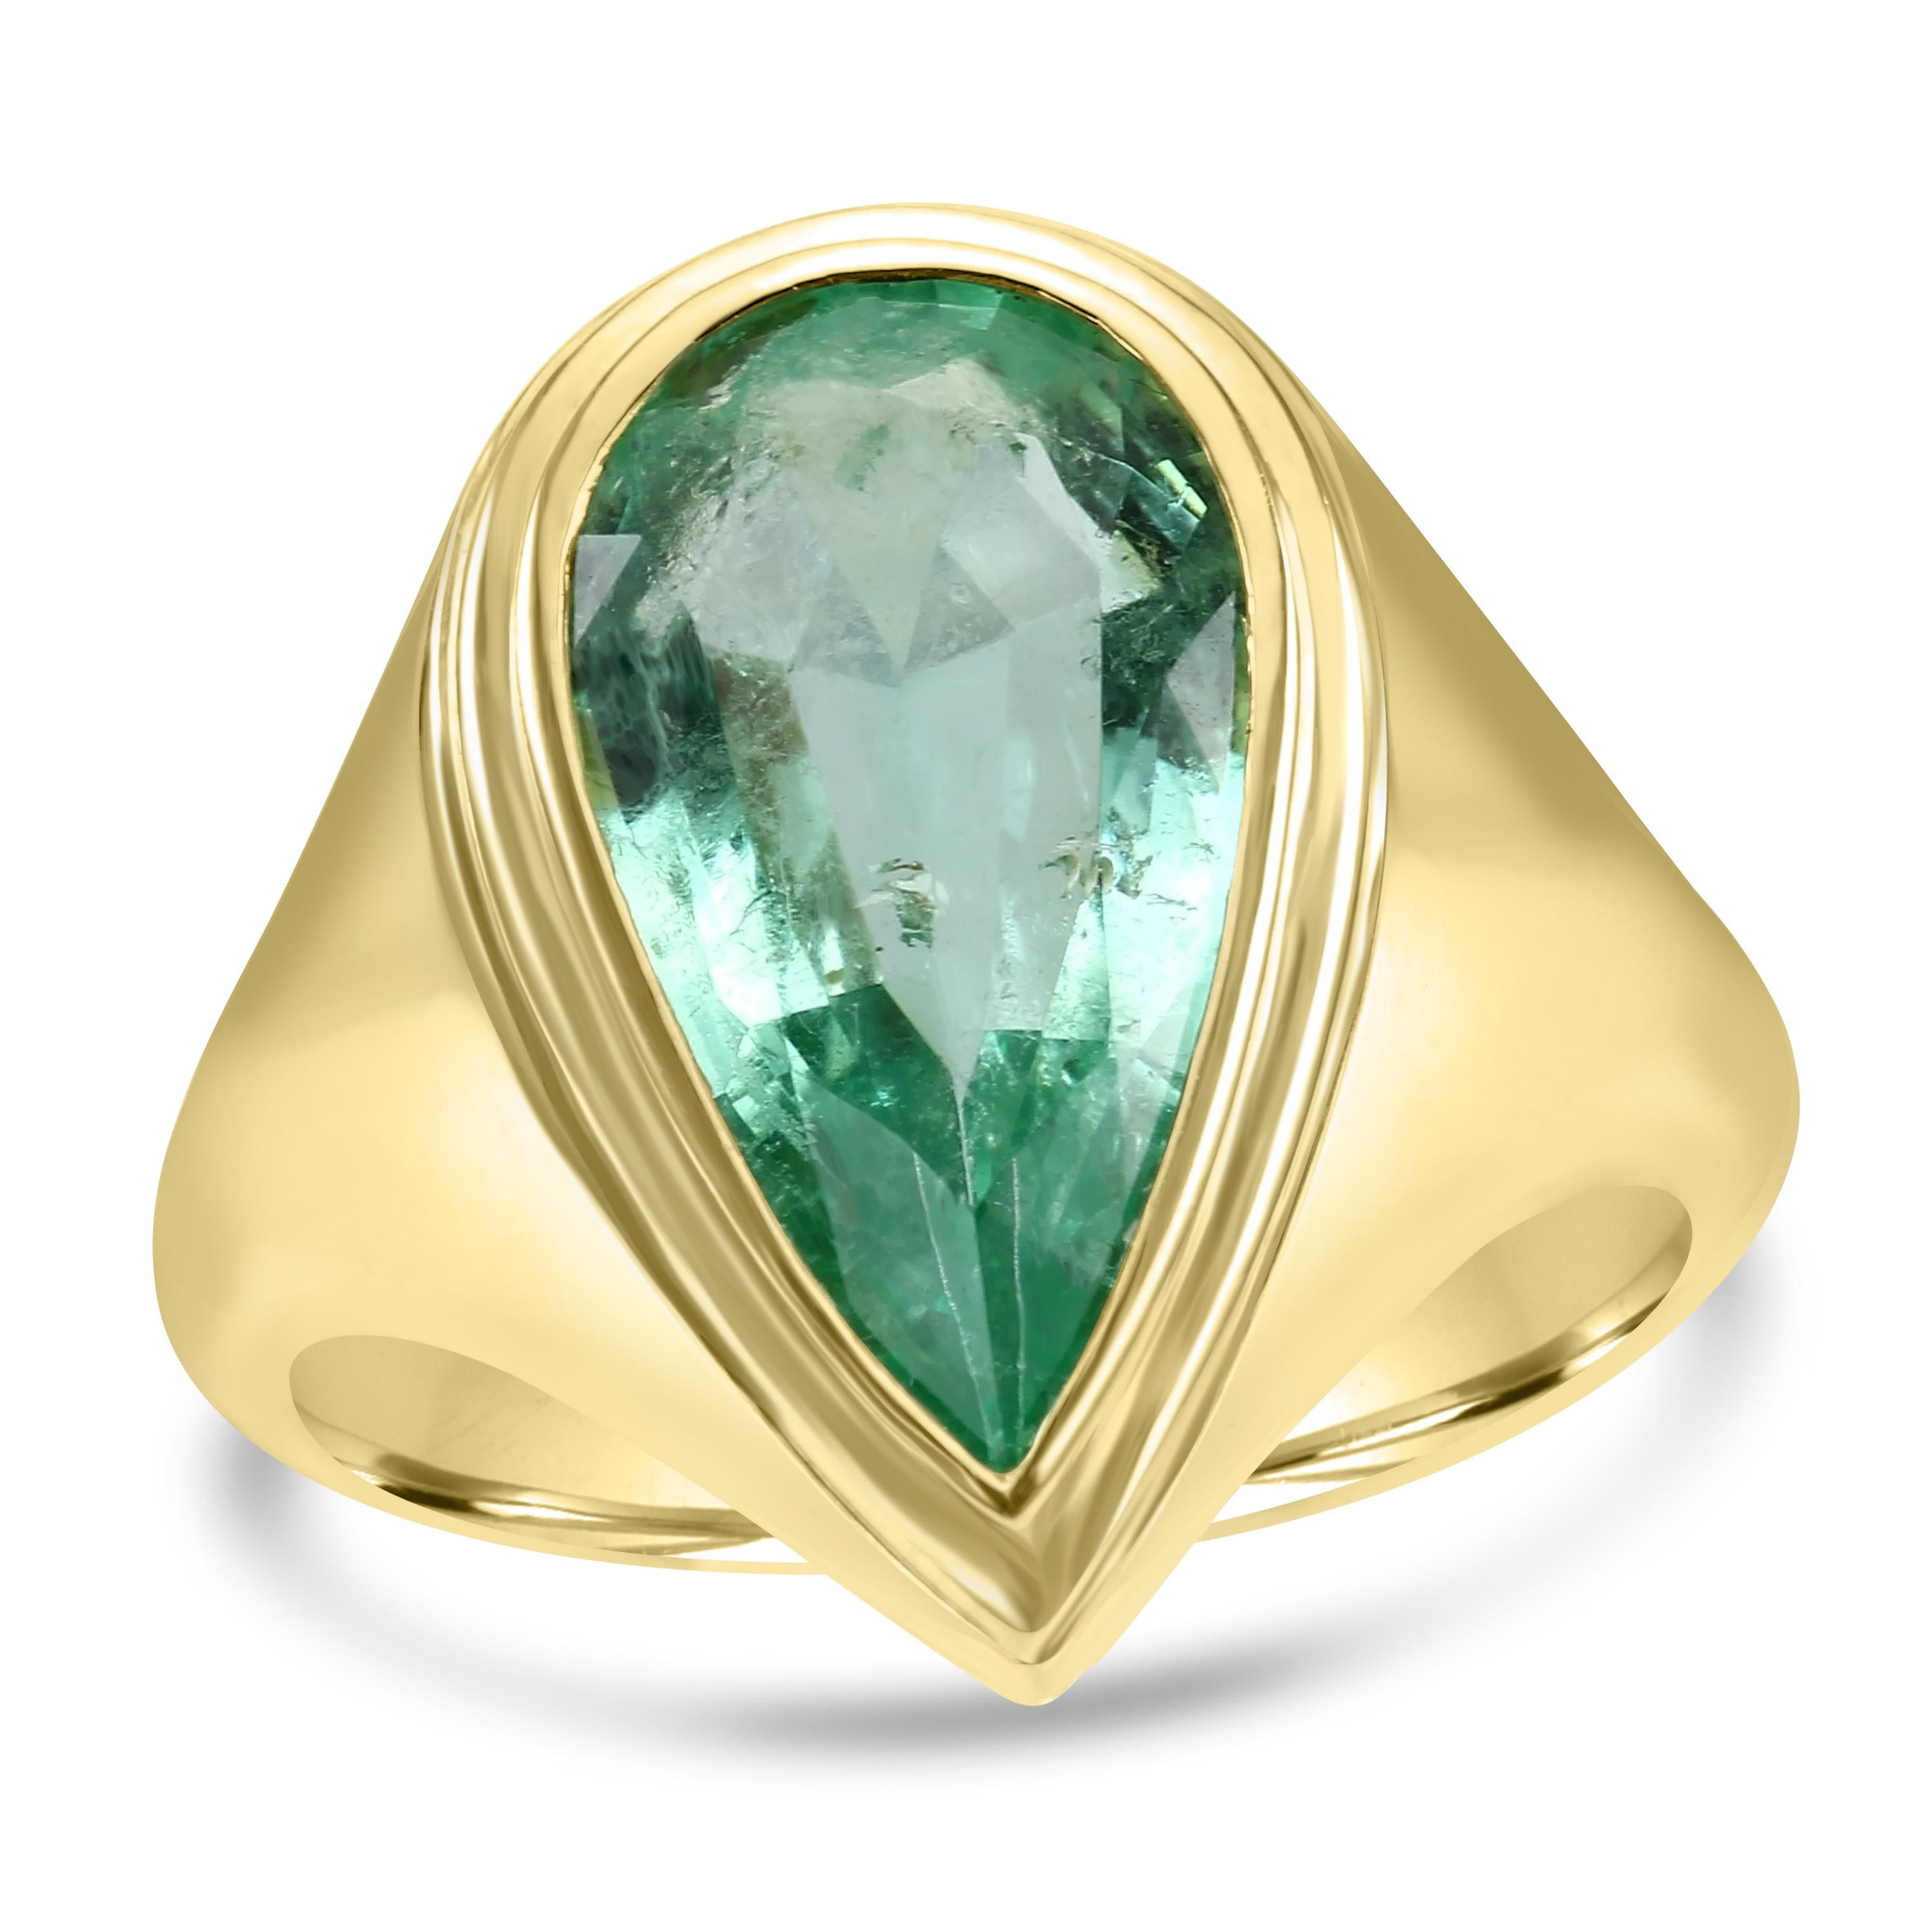 Erhöhen Sie Ihre Liebesgeschichte mit unserem exquisiten Fashion Bridal Bezel-Set Emerald Ring.

Der Star dieses Brautrings ist der bezaubernde birnenförmige Muzo-Smaragd aus der Muzo-Mine in Kolumbien, der für seinen satten grünen Farbton und seine